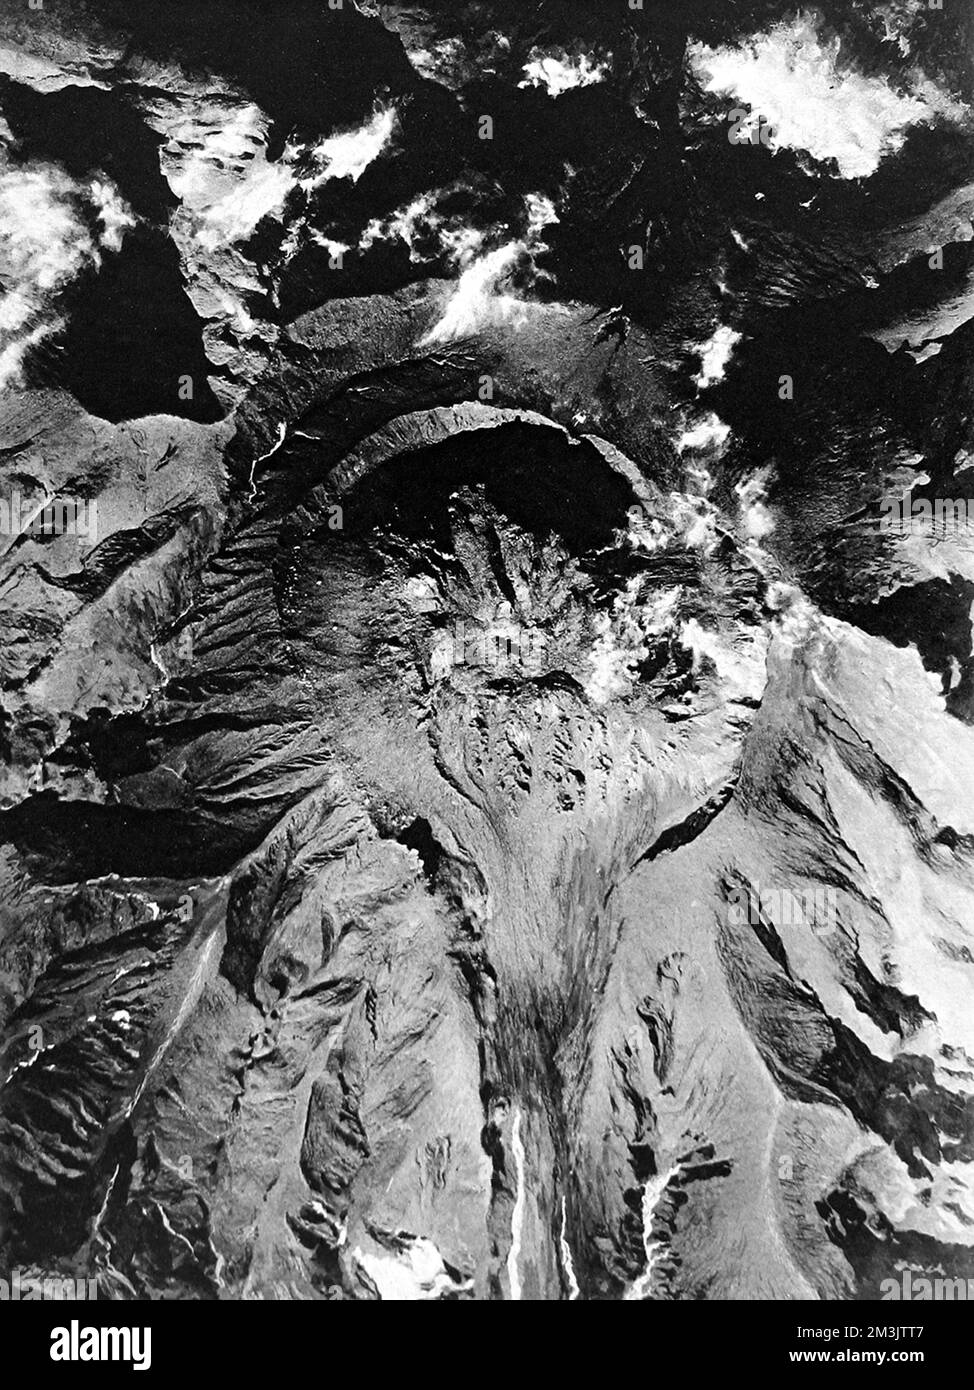 Fotografia che mostra una vista aerea di Mont Pelee, Martinica, il vulcano che eruttò e distrusse San Pietro nel maggio 1902. Visto da un aeroplano a 8000 piedi, il flusso di lava indurito può essere visto allungandosi verso il fondo dell'immagine. Data: 1926 Foto Stock